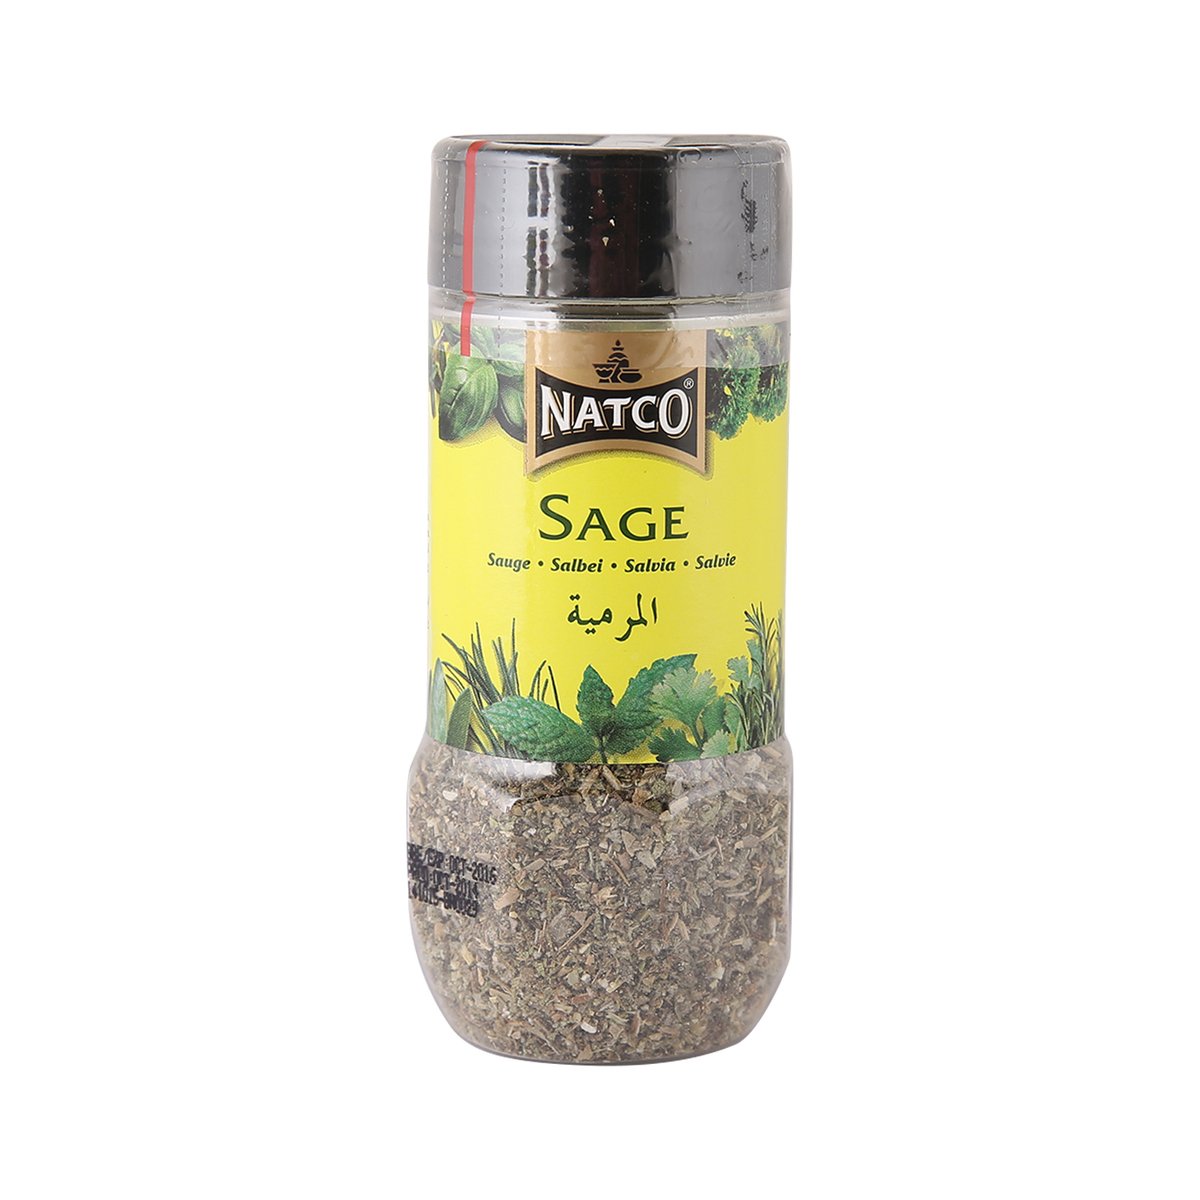 Natco Sage 25 g